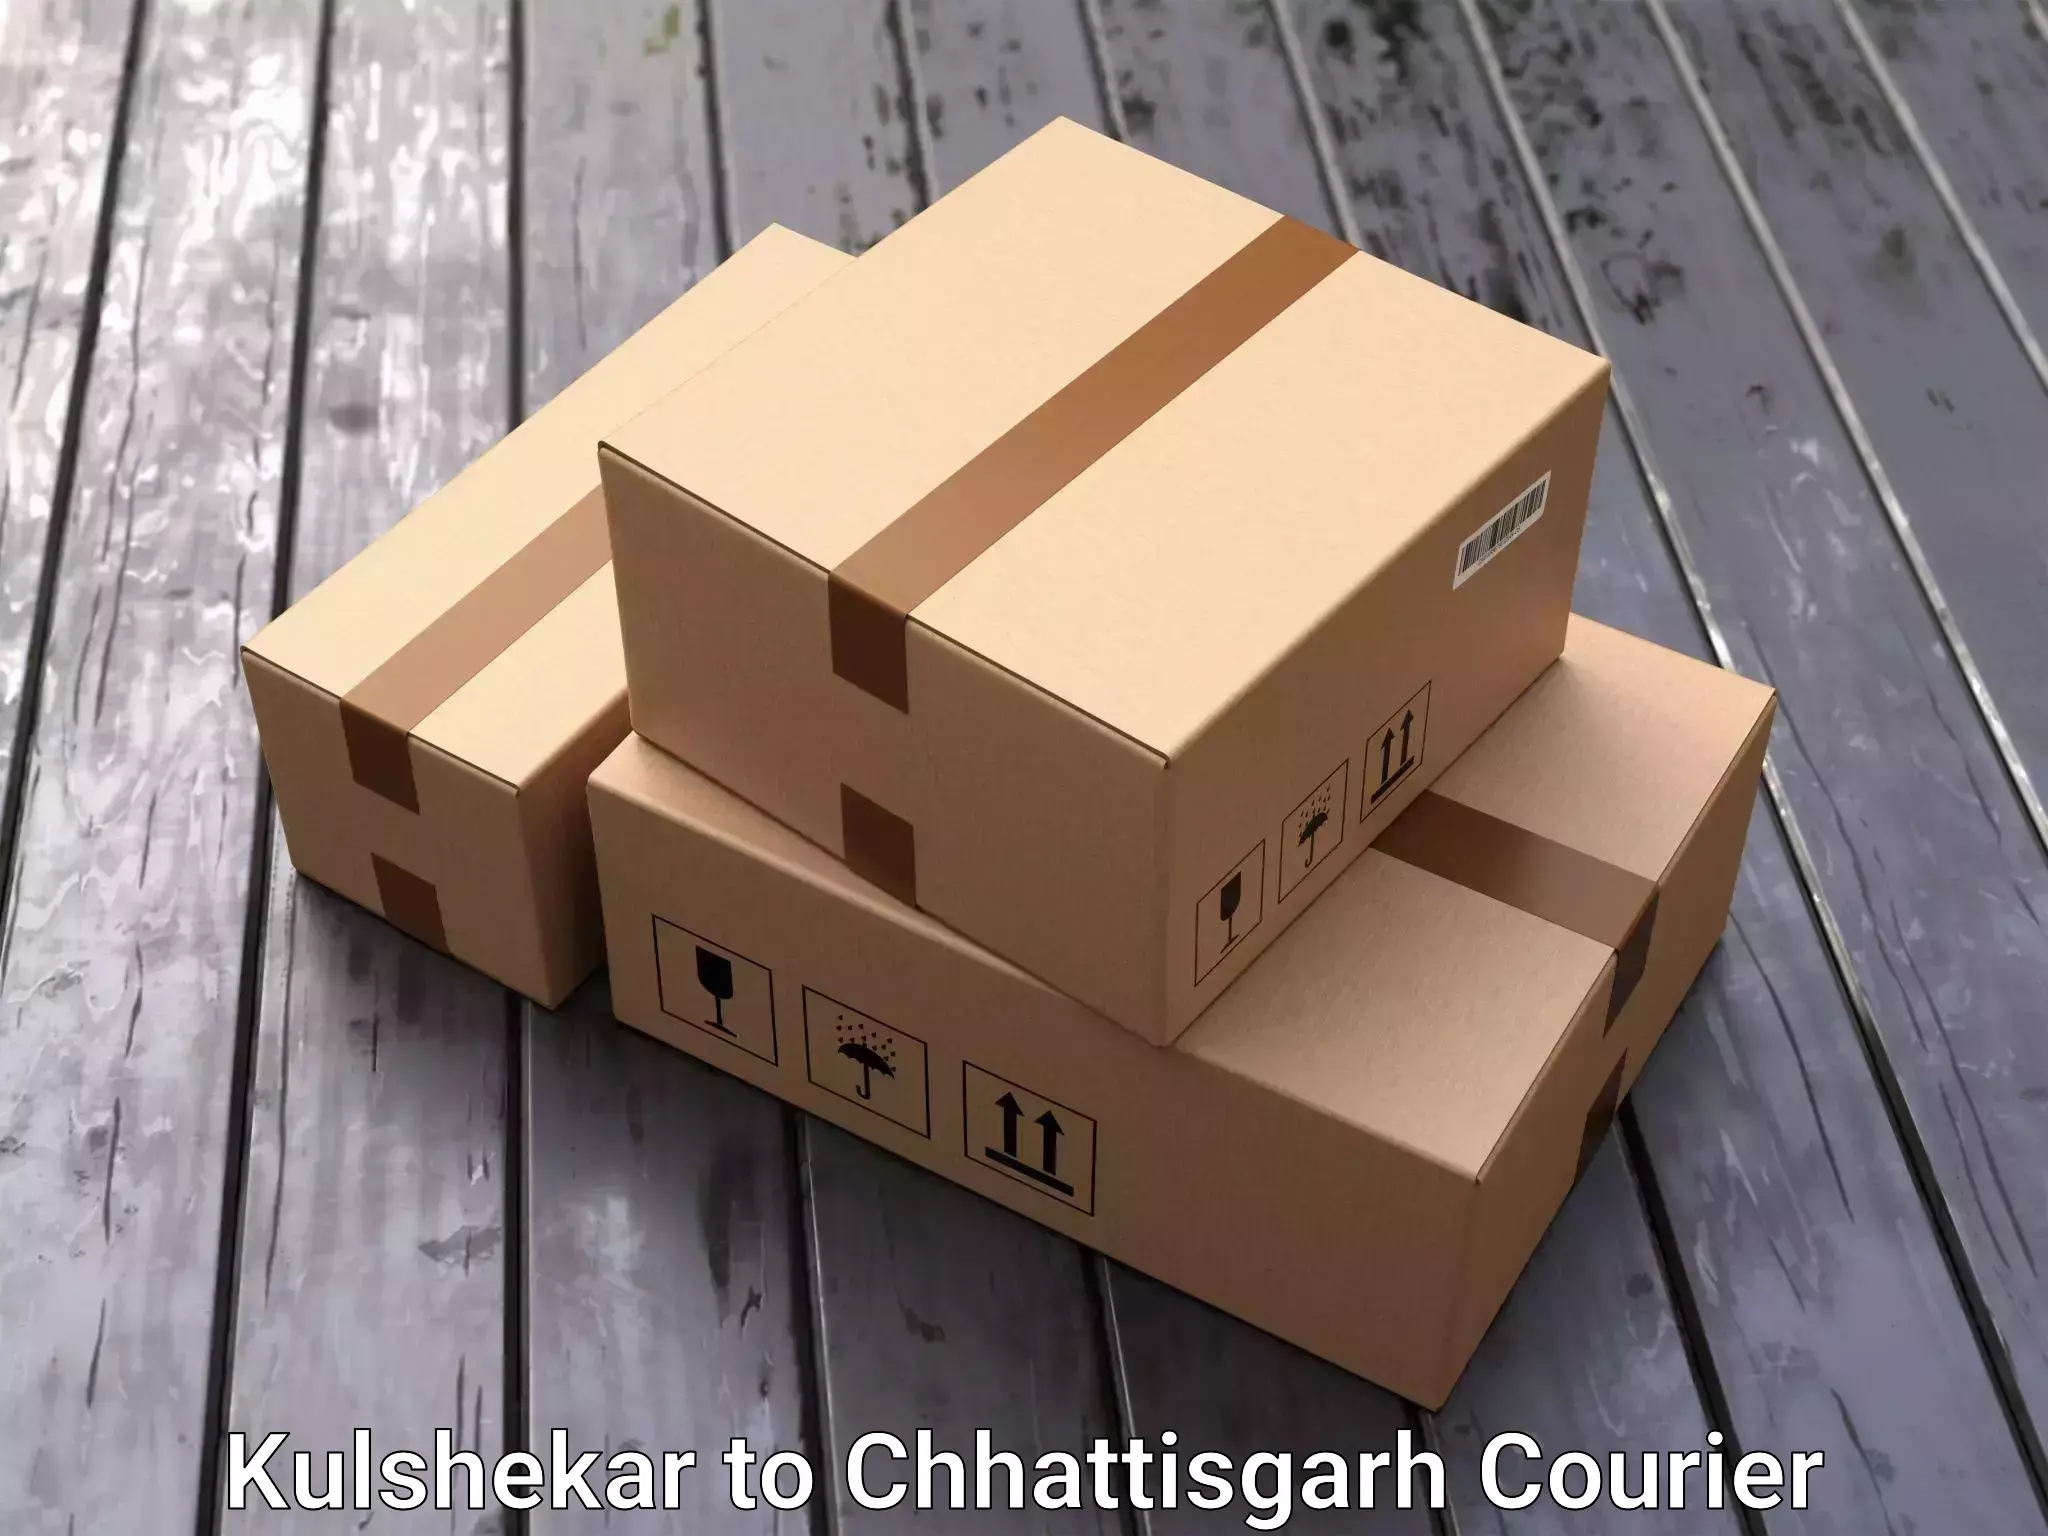 Household goods transport service Kulshekar to Korea Chhattisgarh